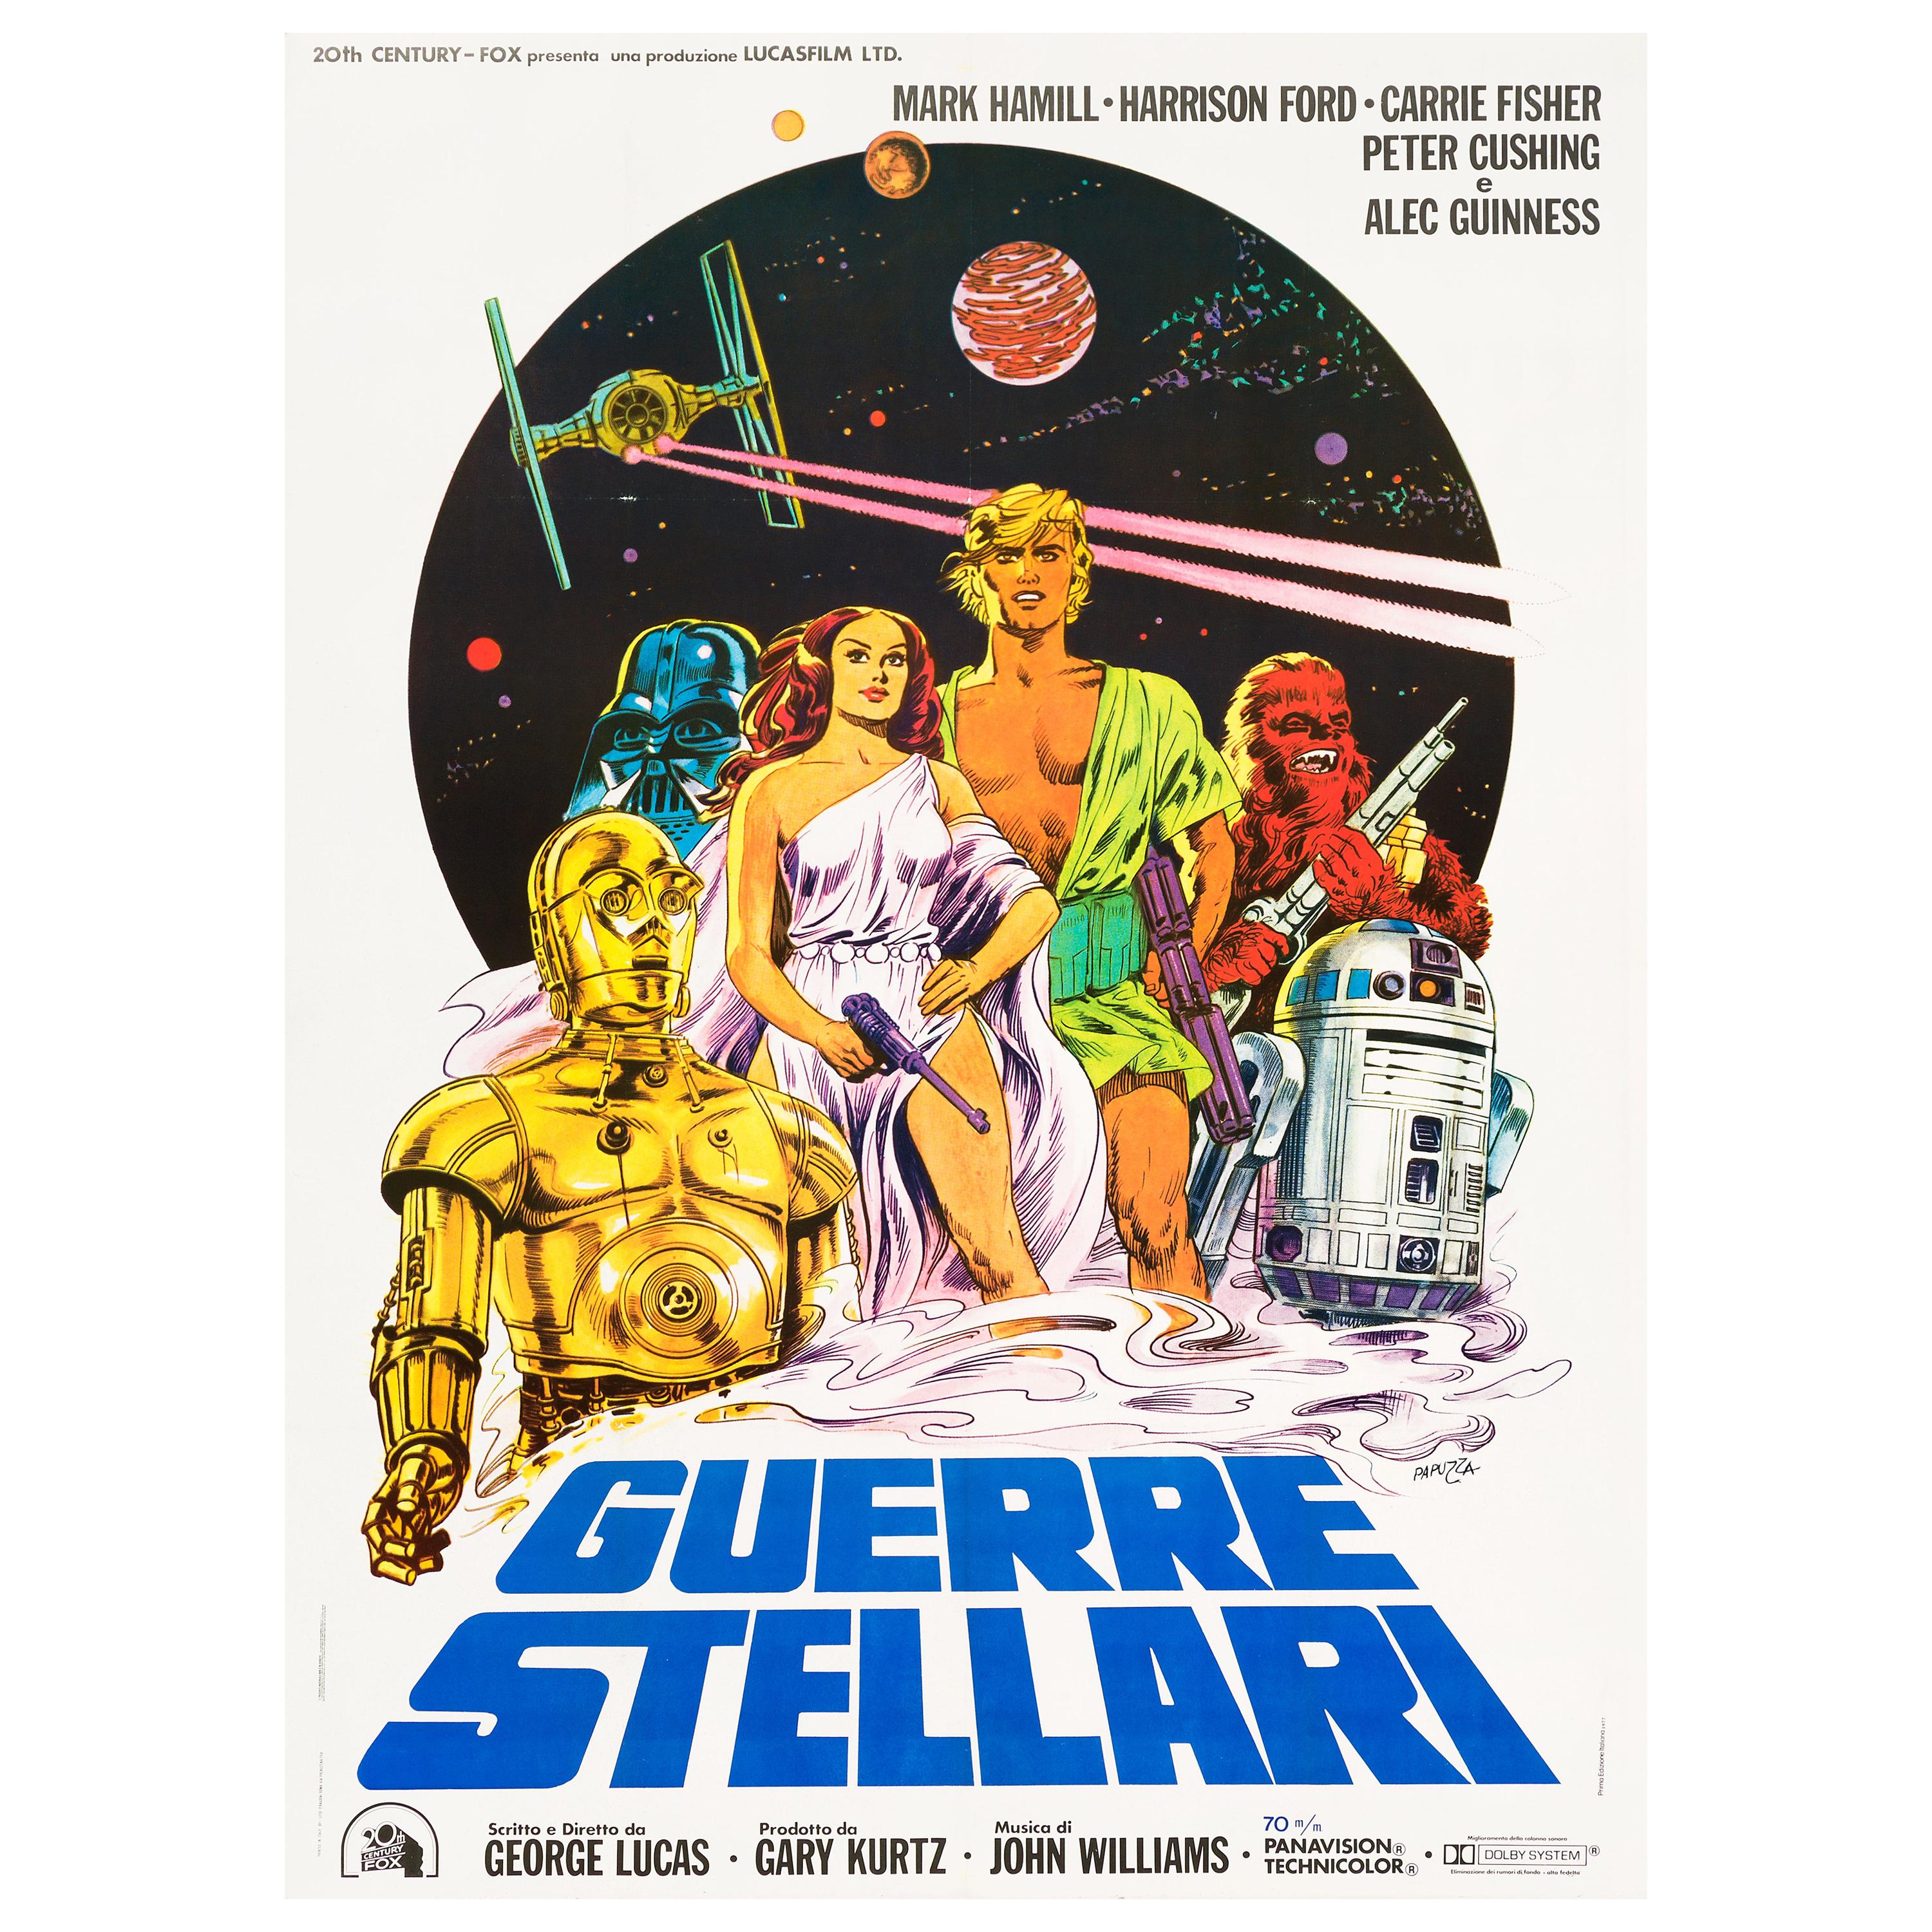 'Star Wars' Original Vintage Italian Movie Poster by Michelangelo Papuzza, 1977